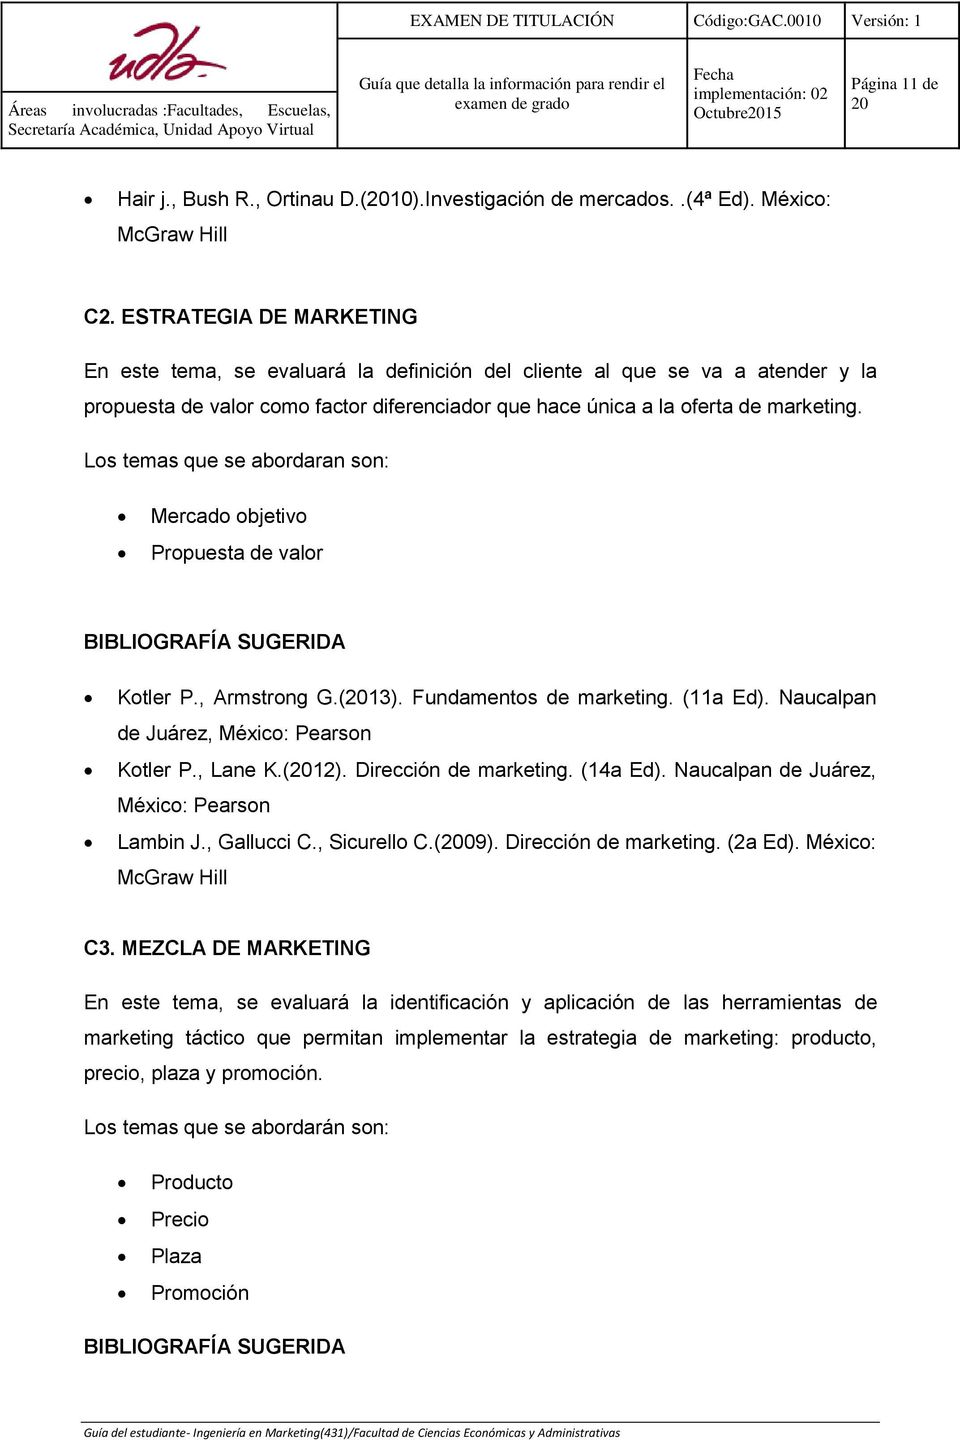 Los temas que se abordaran son: Mercado objetivo Propuesta de valor Kotler P., Armstrong G.(13). Fundamentos de marketing. (11a Ed). Naucalpan de Juárez, México: Pearson Kotler P., Lane K.(12).